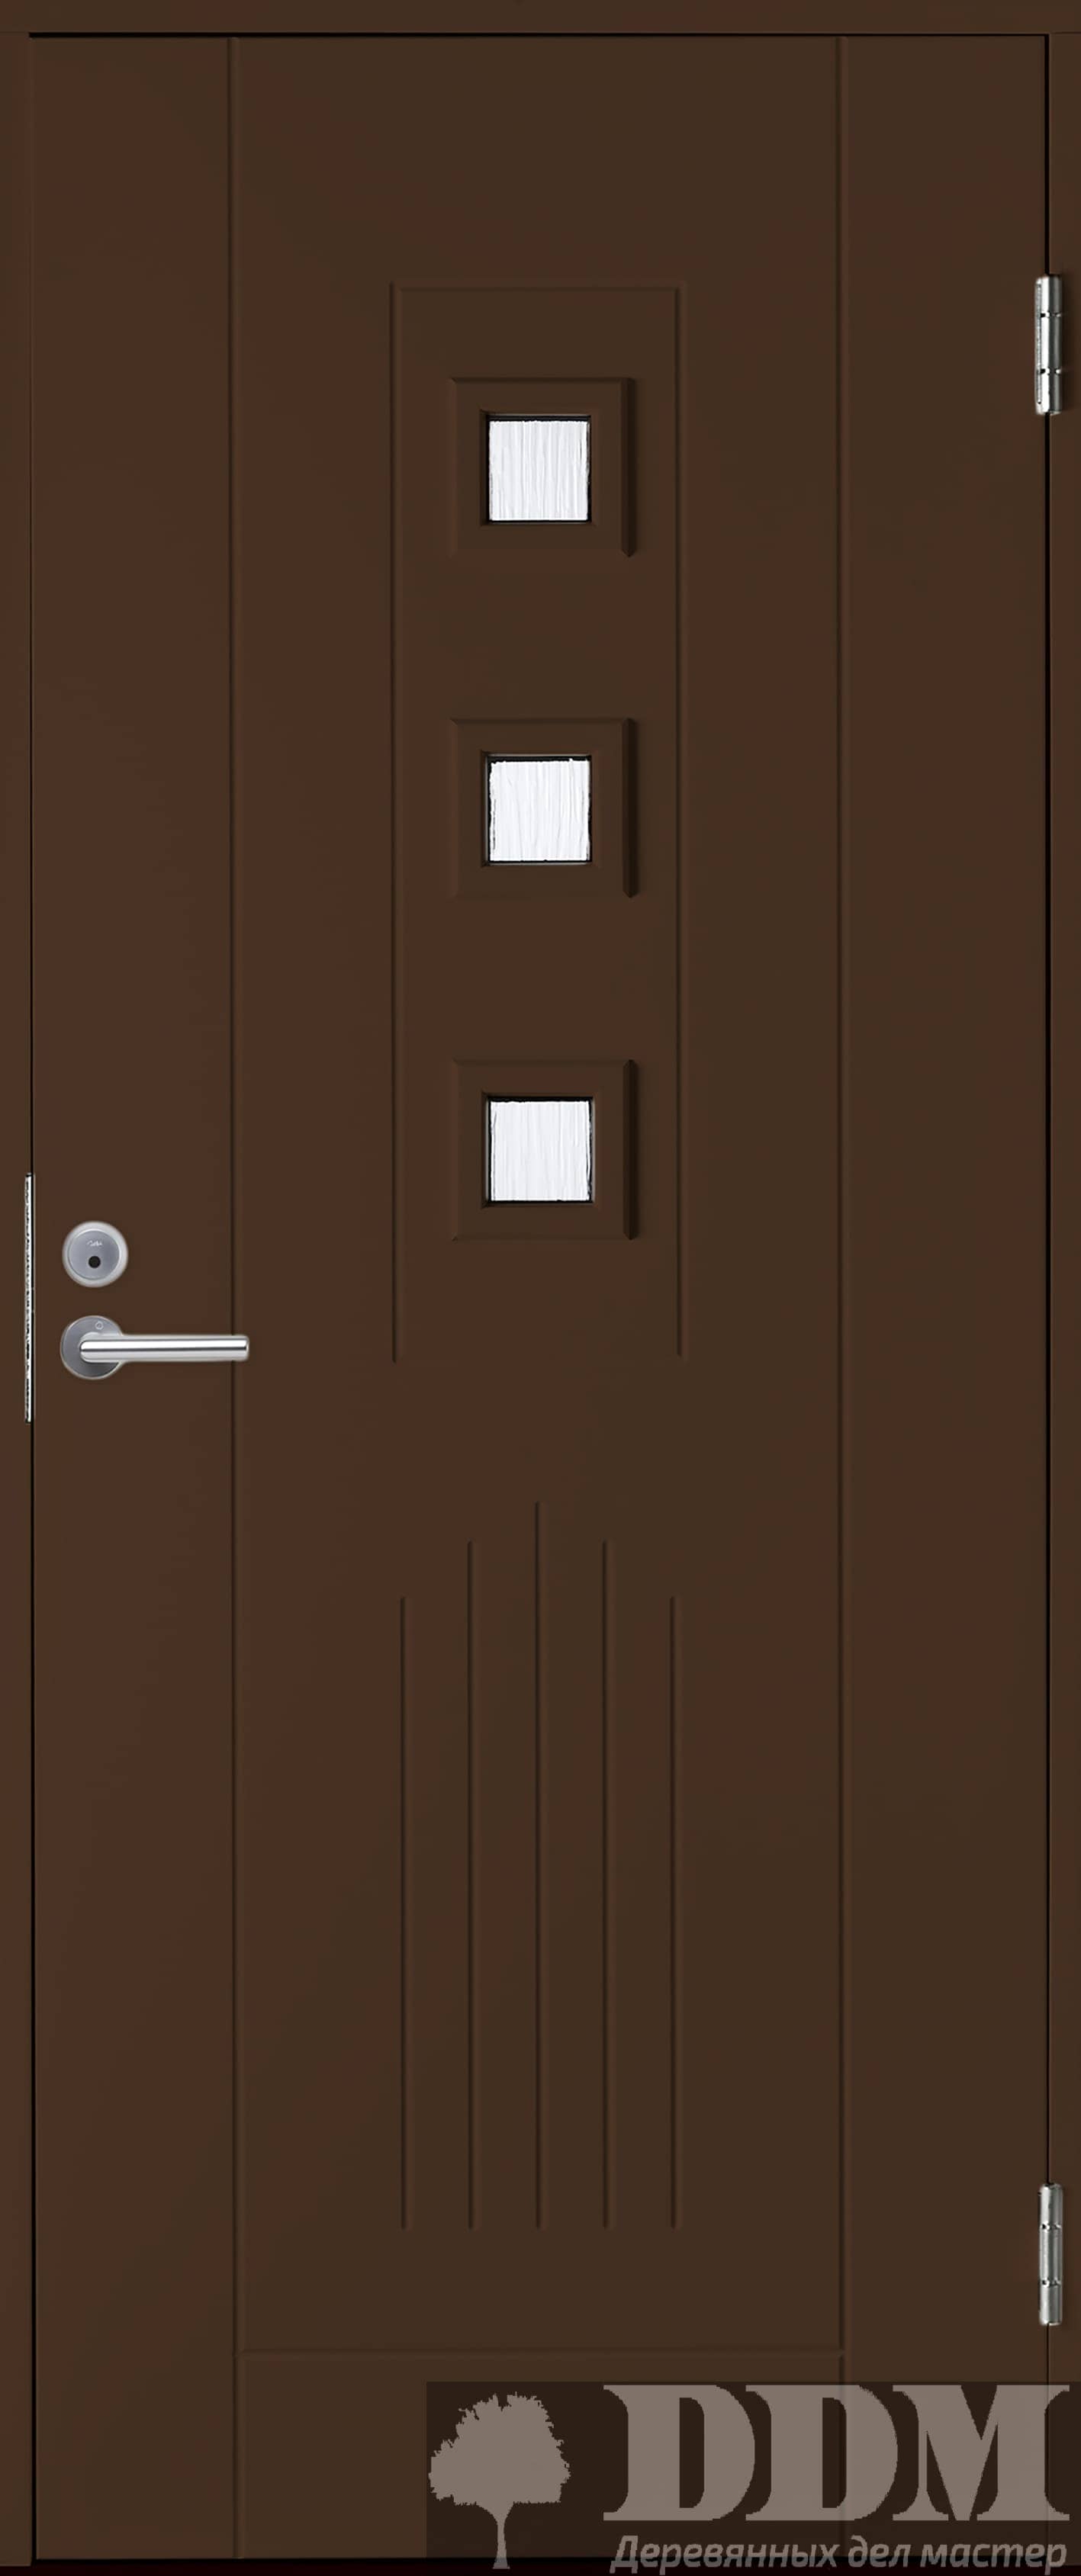 ﻿Входная дверь B0060 коричневая